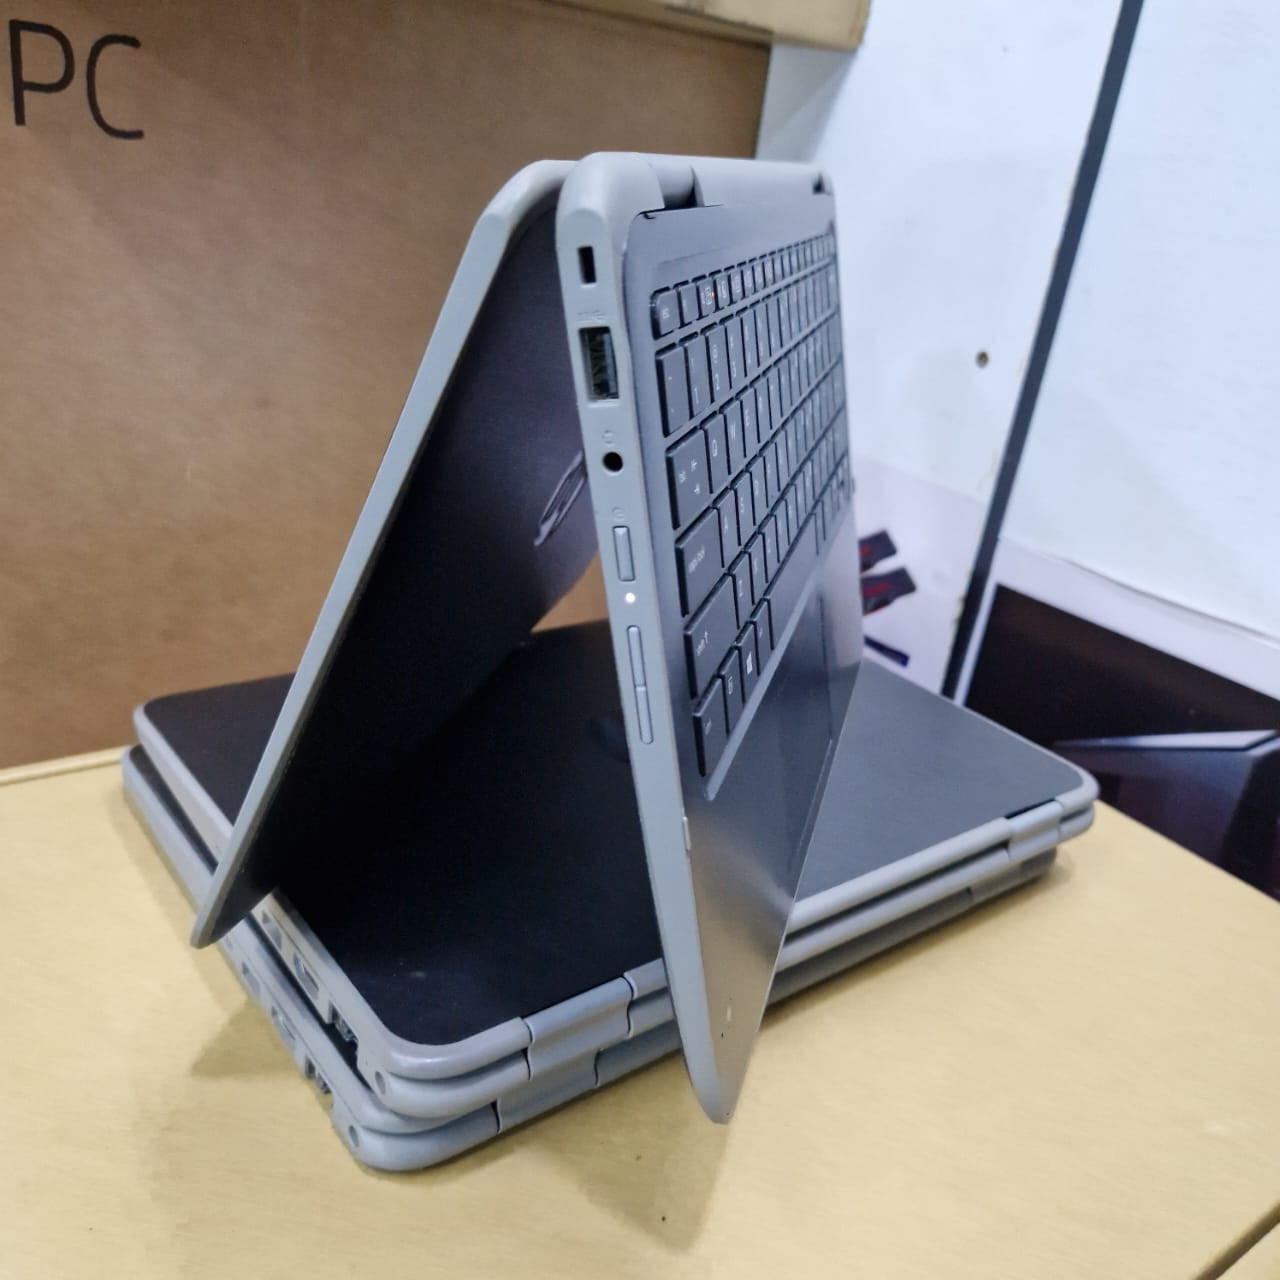 Hp ProBook 11 g4 Core i5 8th gen 8gb/256gb X360 touchscreen 11.6 inches